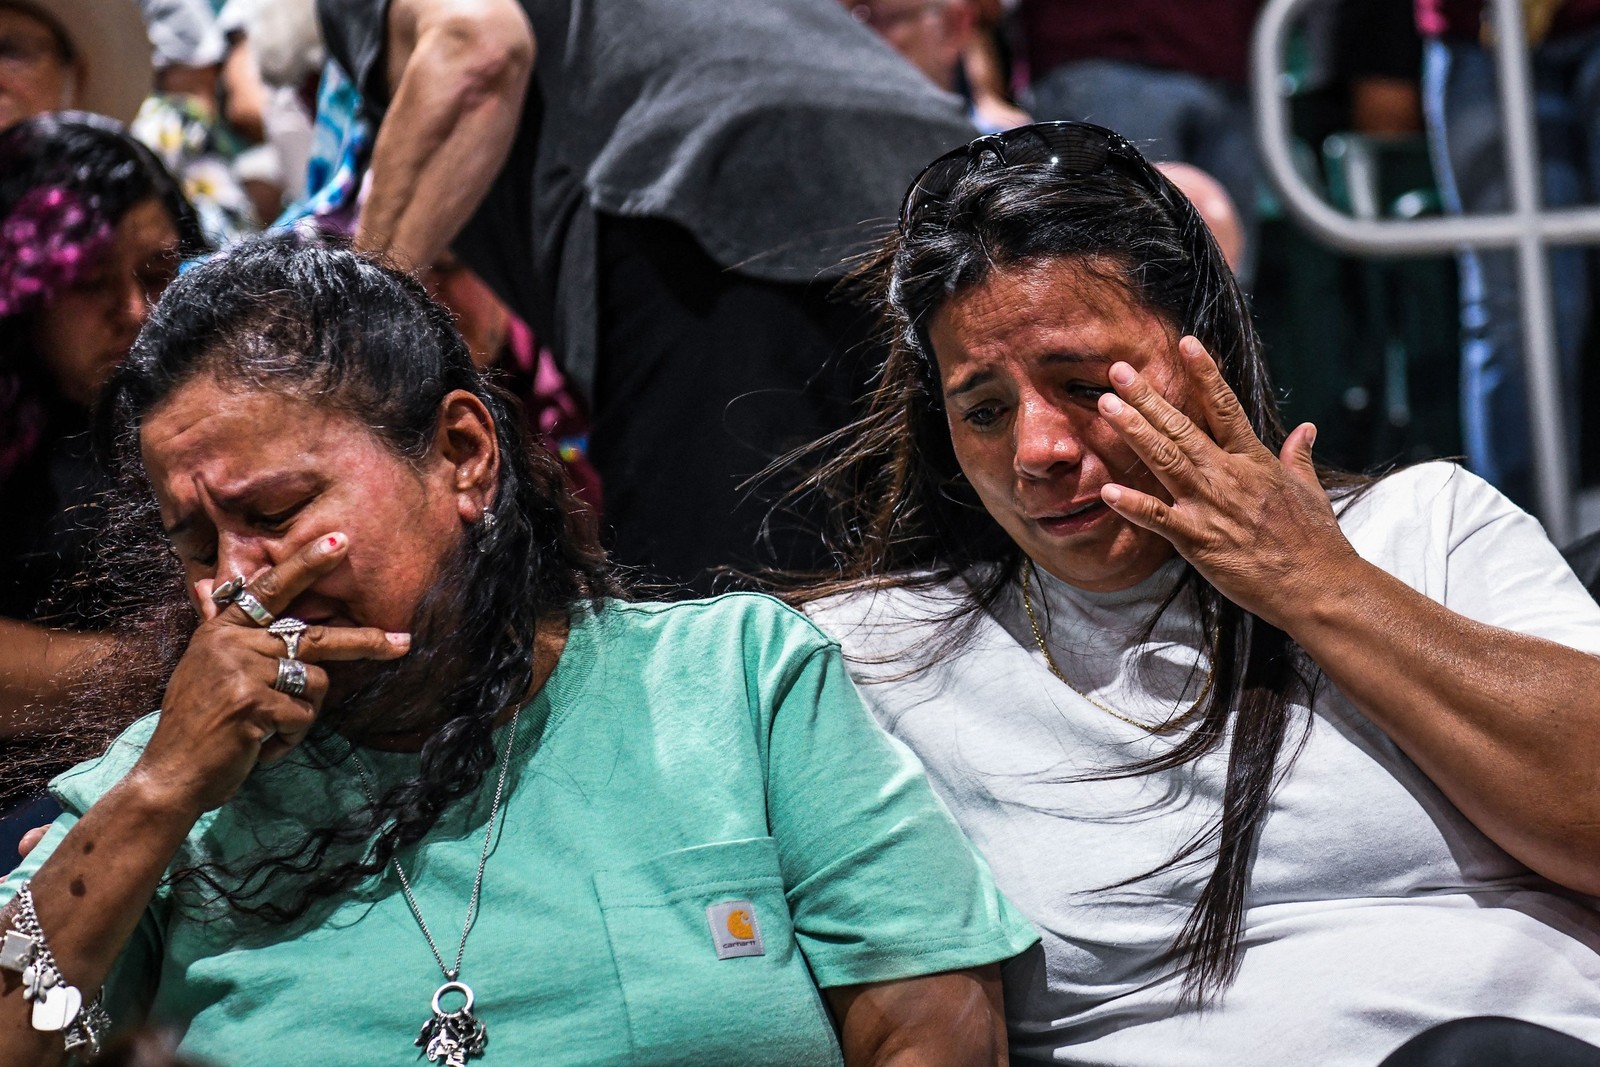 Pessoas choram durante vigília pelas vítimas do tiroteio em massa na Robb Elementary School em Uvalde, Texas — Foto: CHANDAN KHANNA / AFP